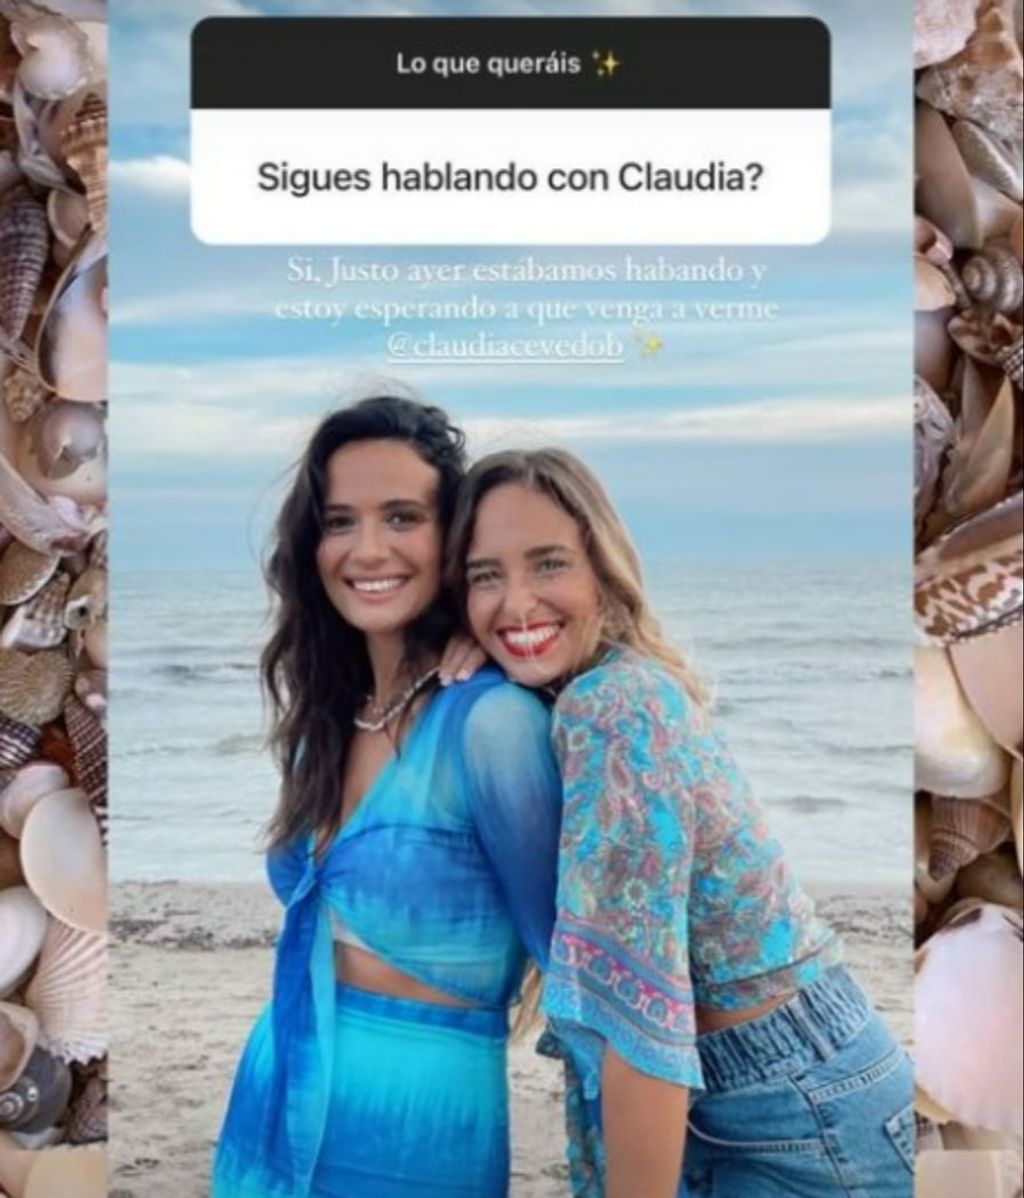 Lara Tronti aclara que sigue en contacto con Claudia Acevedo